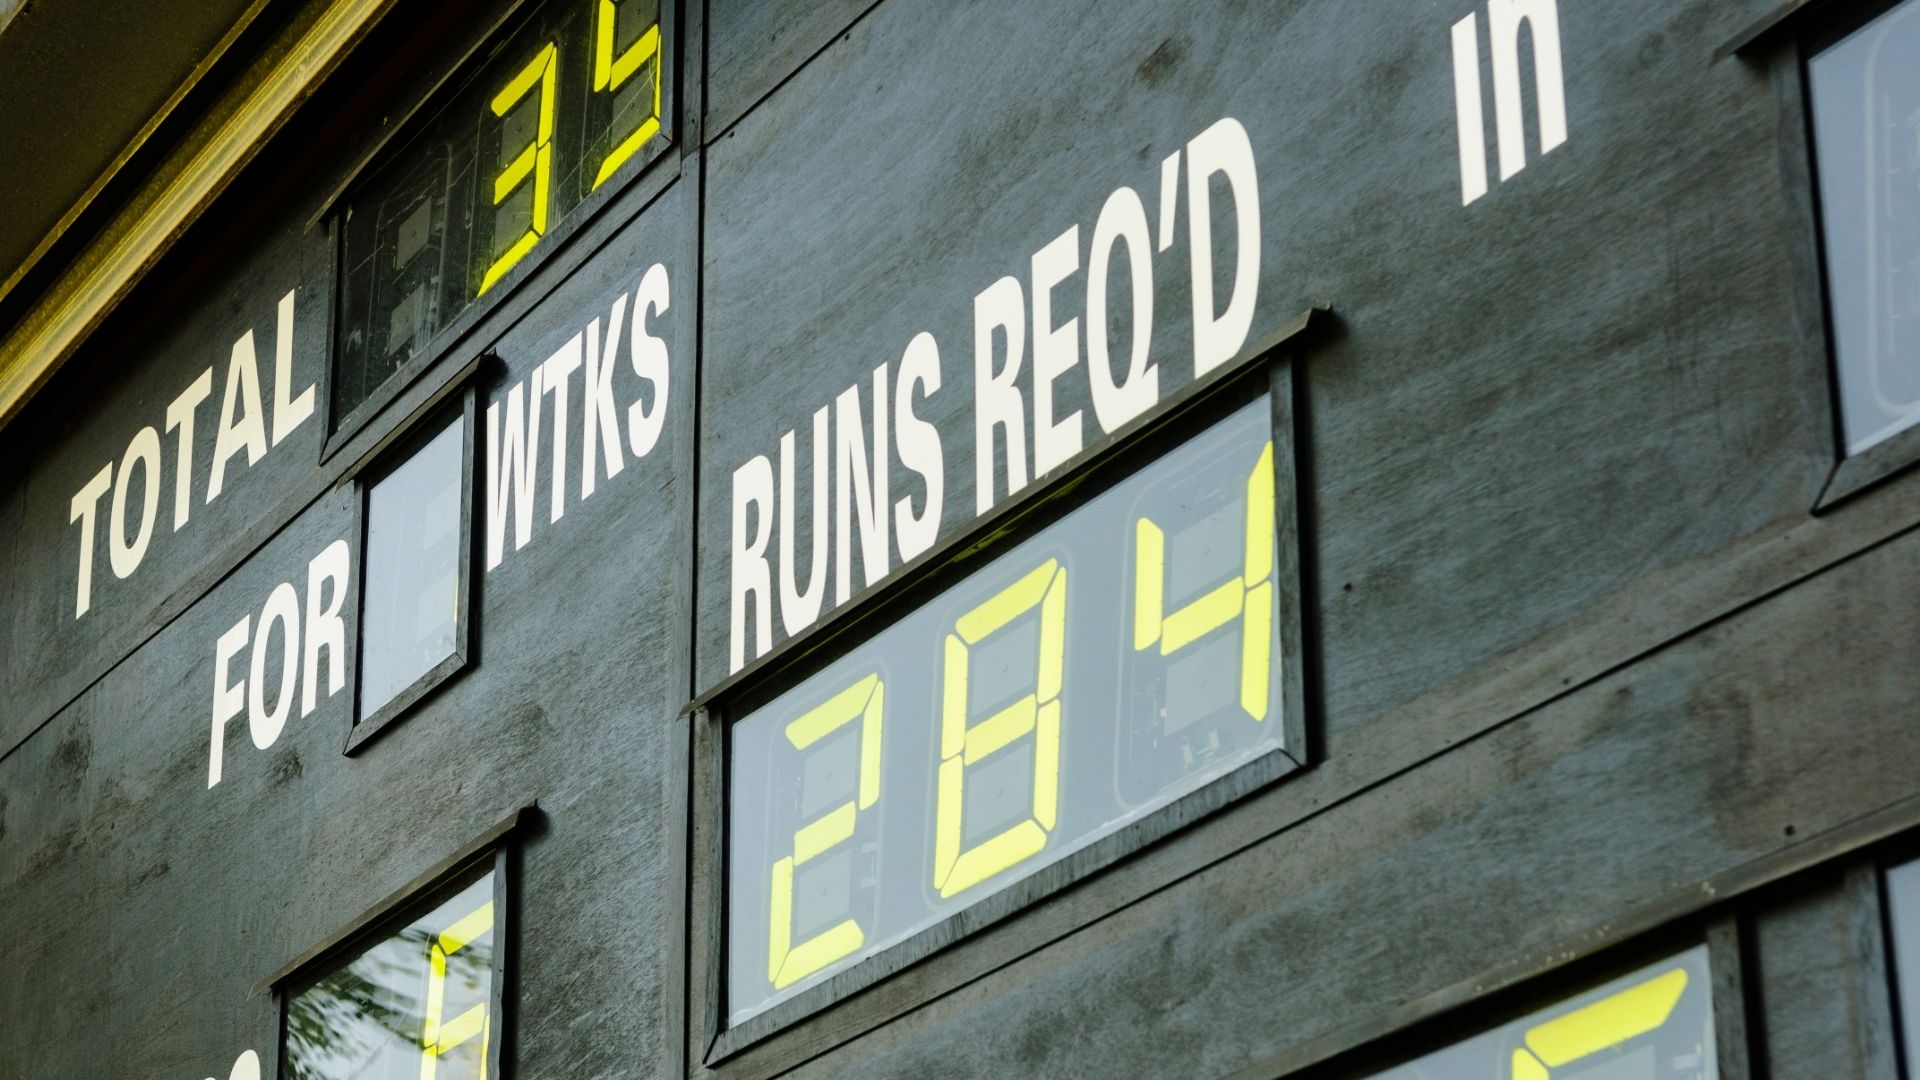 Cricket scoreboard